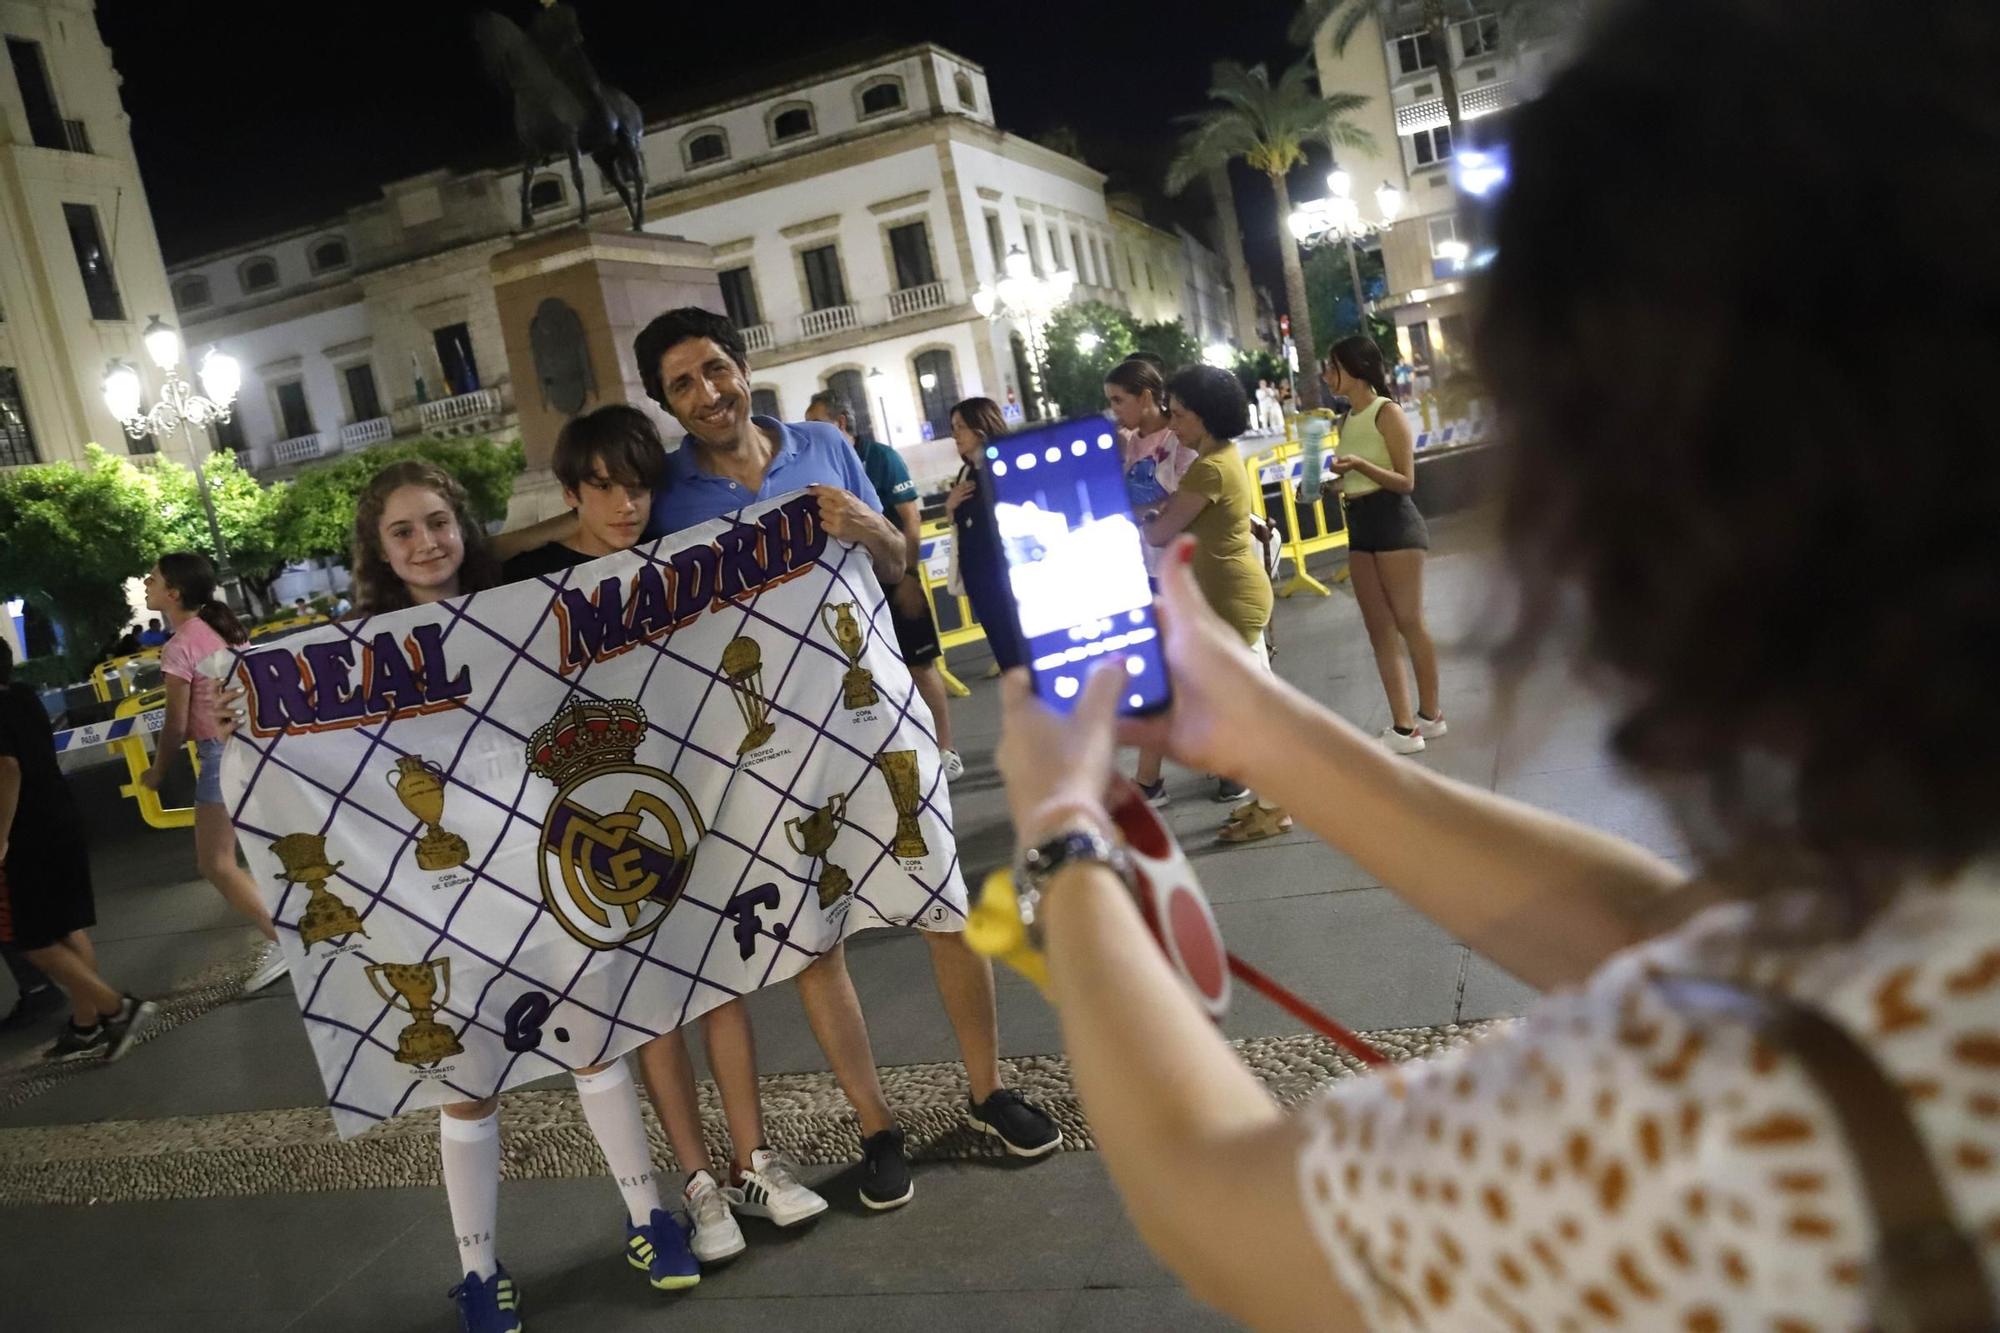 La celebración del título de Champions del Real Madrid en Córdoba, en imágenes